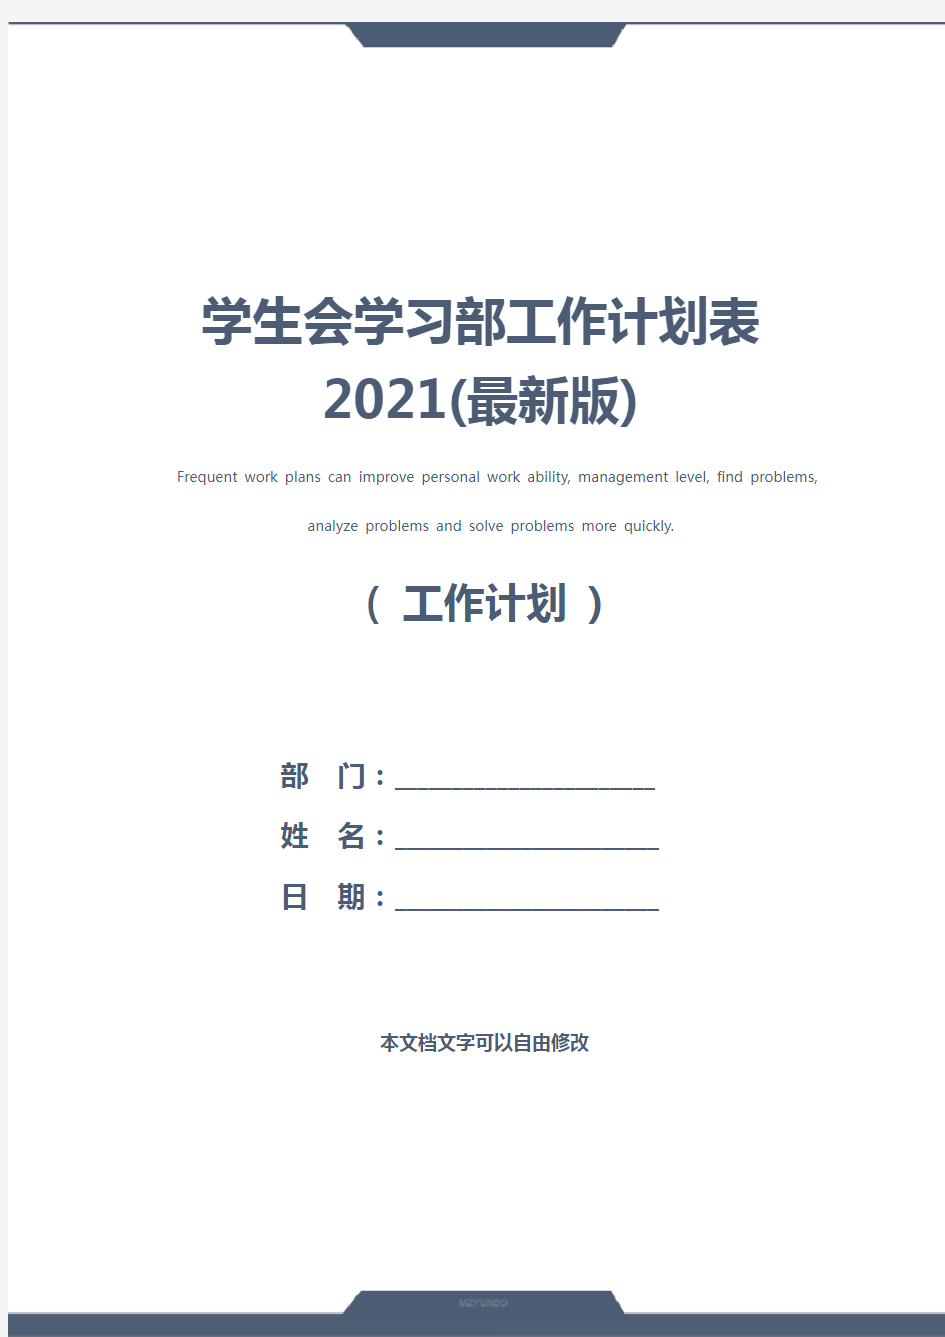 学生会学习部工作计划表2021(最新版)